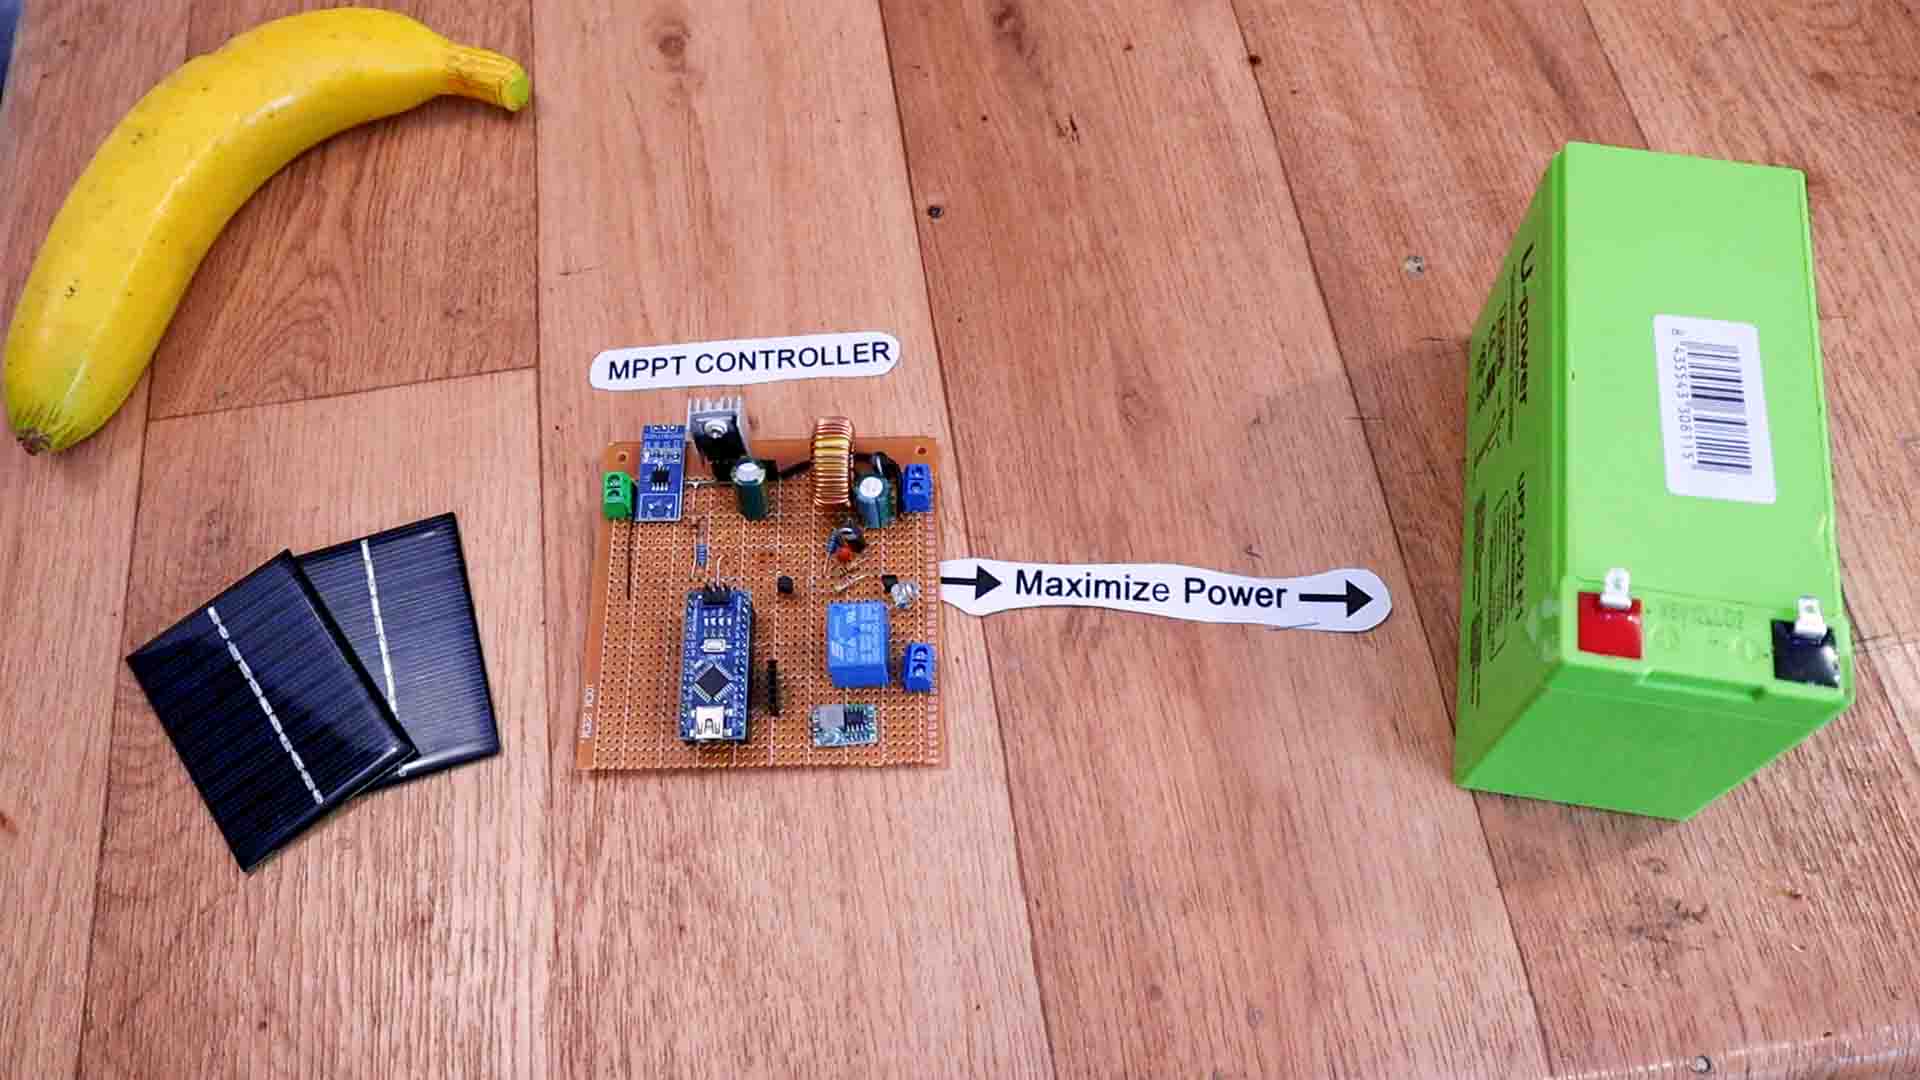 Homemade Arduino MMPT controller